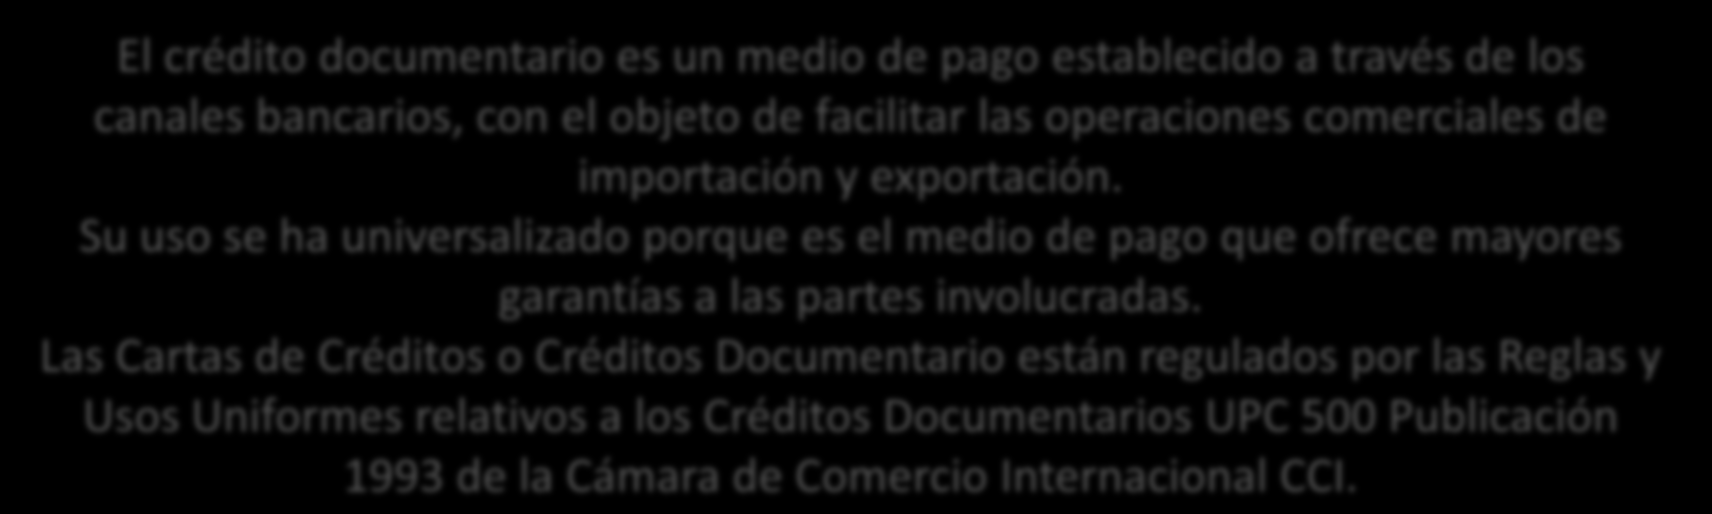 CARTA DE CREDITO CREDITO DOCUMENTARIO El crédito documentario es un medio de pago establecido a través de los canales bancarios,